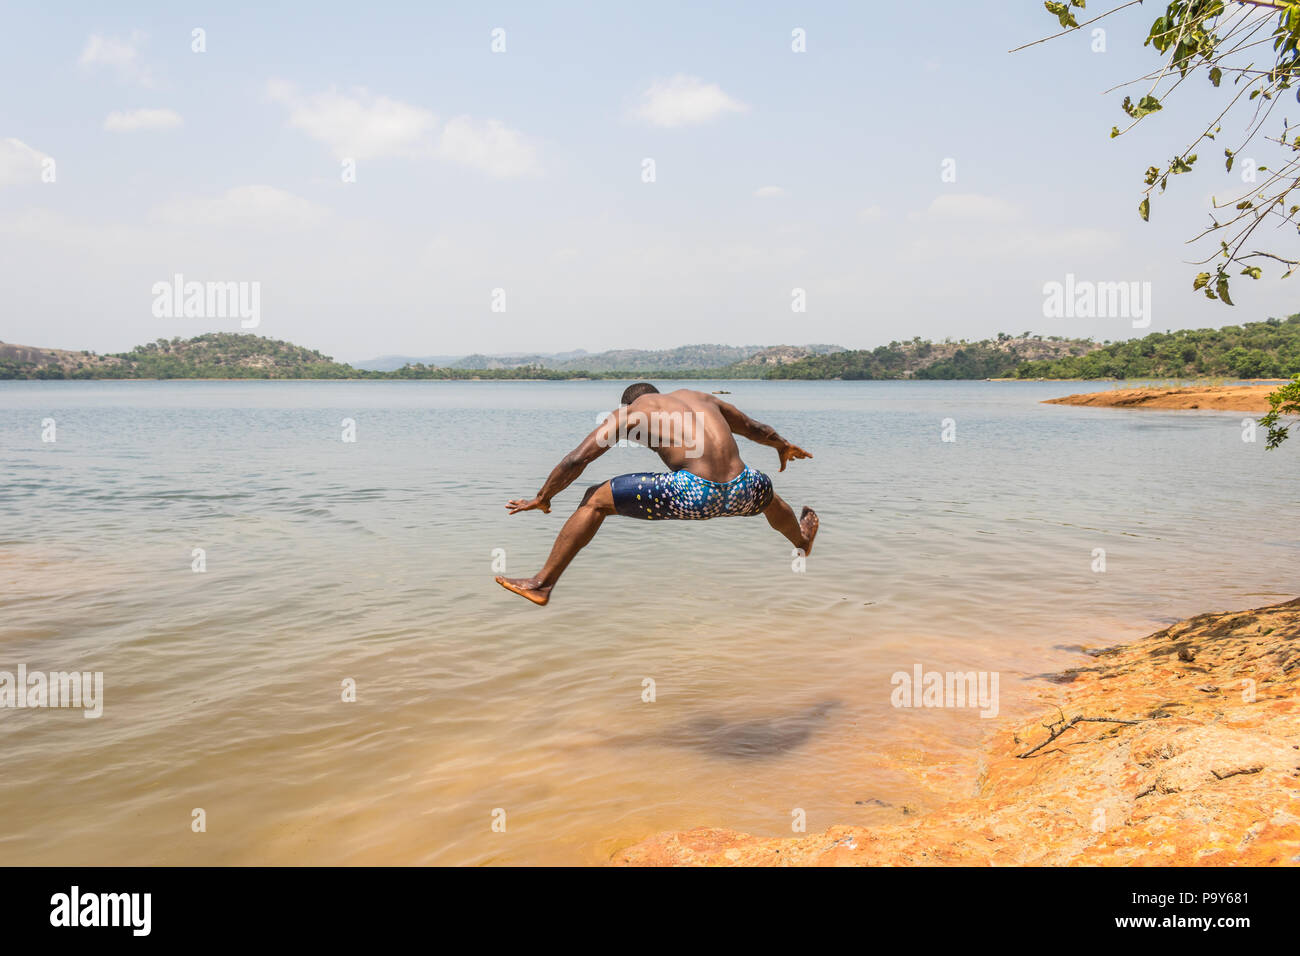 Eine junge muskulöse athletischen Mann nimmt einen Sprung in den Fluss in den Morgen. Stockfoto